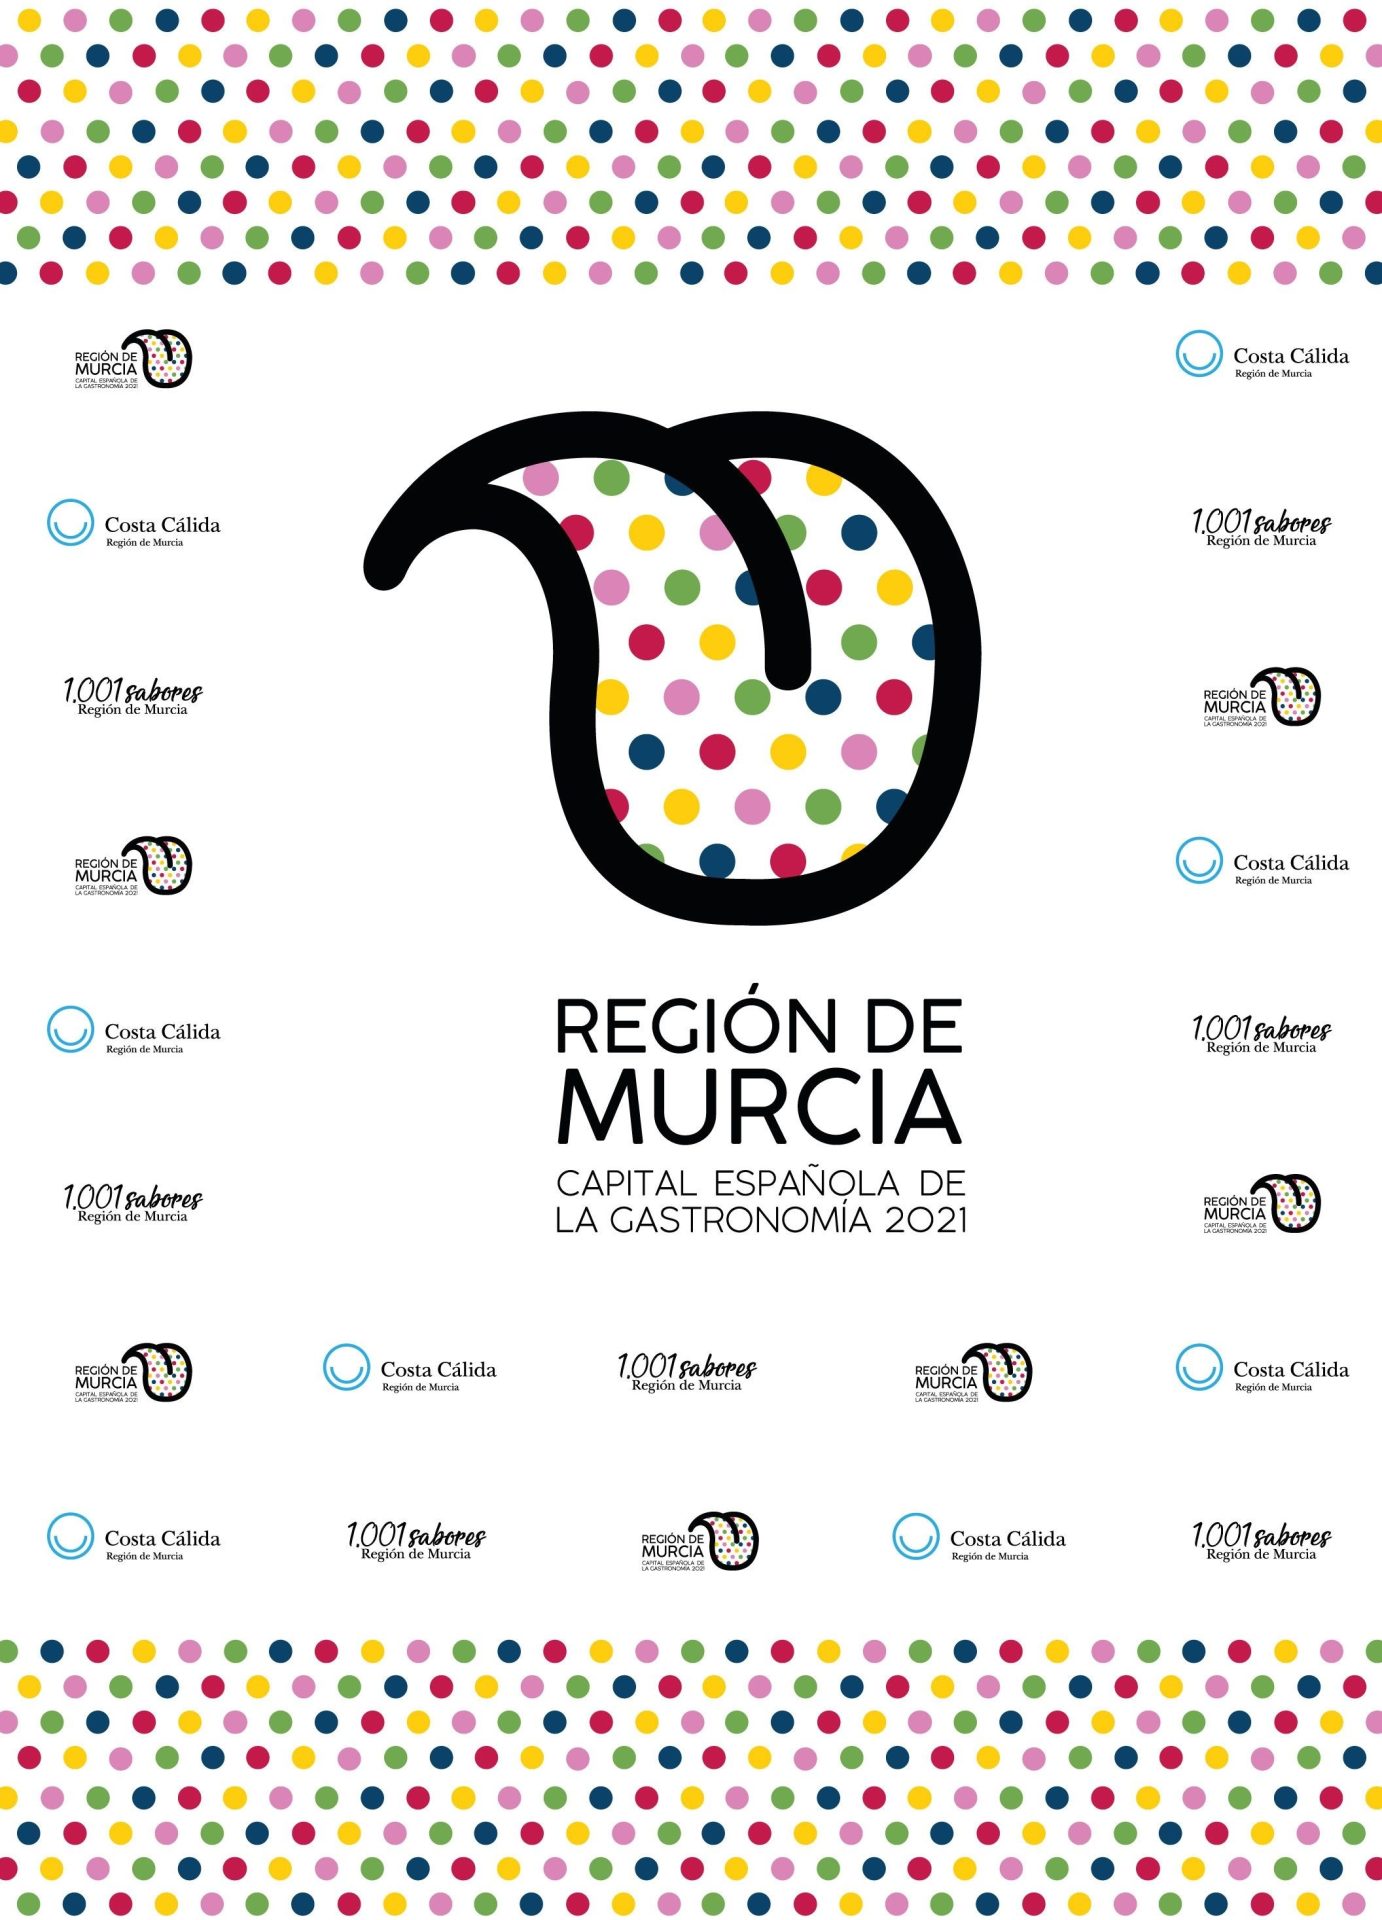 La Región de Murcia, capital española de la gastronomía 2021